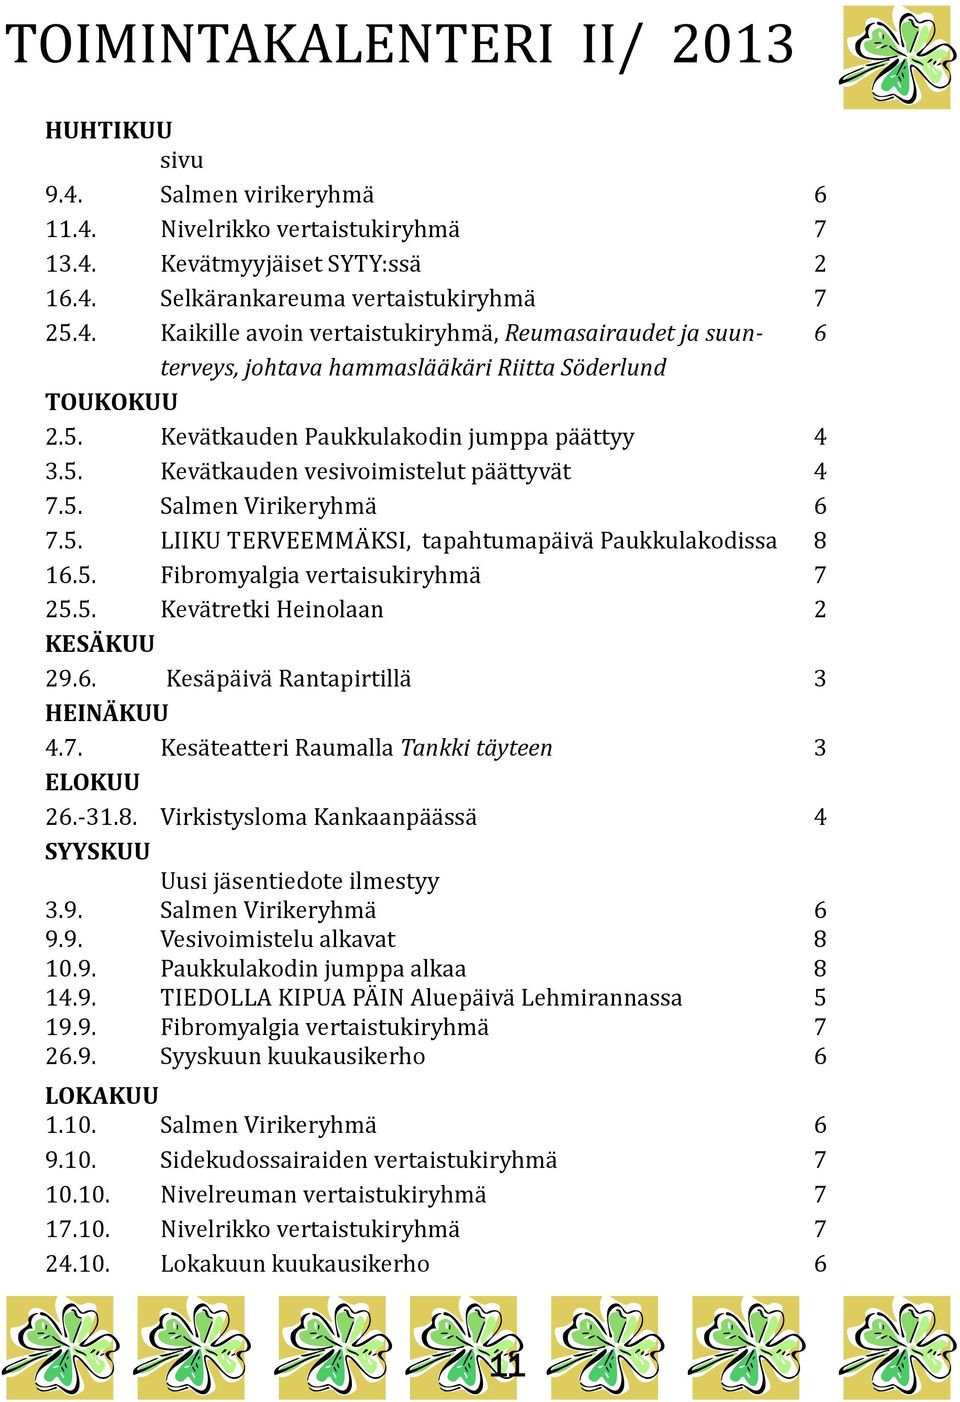 5. Kevätretki Heinolaan 2 KESÄKUU 29.6. Kesäpäivä Rantapirtillä 3 HEINÄKUU 4.7. Kesäteatteri Raumalla Tankki täyteen 3 ELOKUU 26.-31.8.